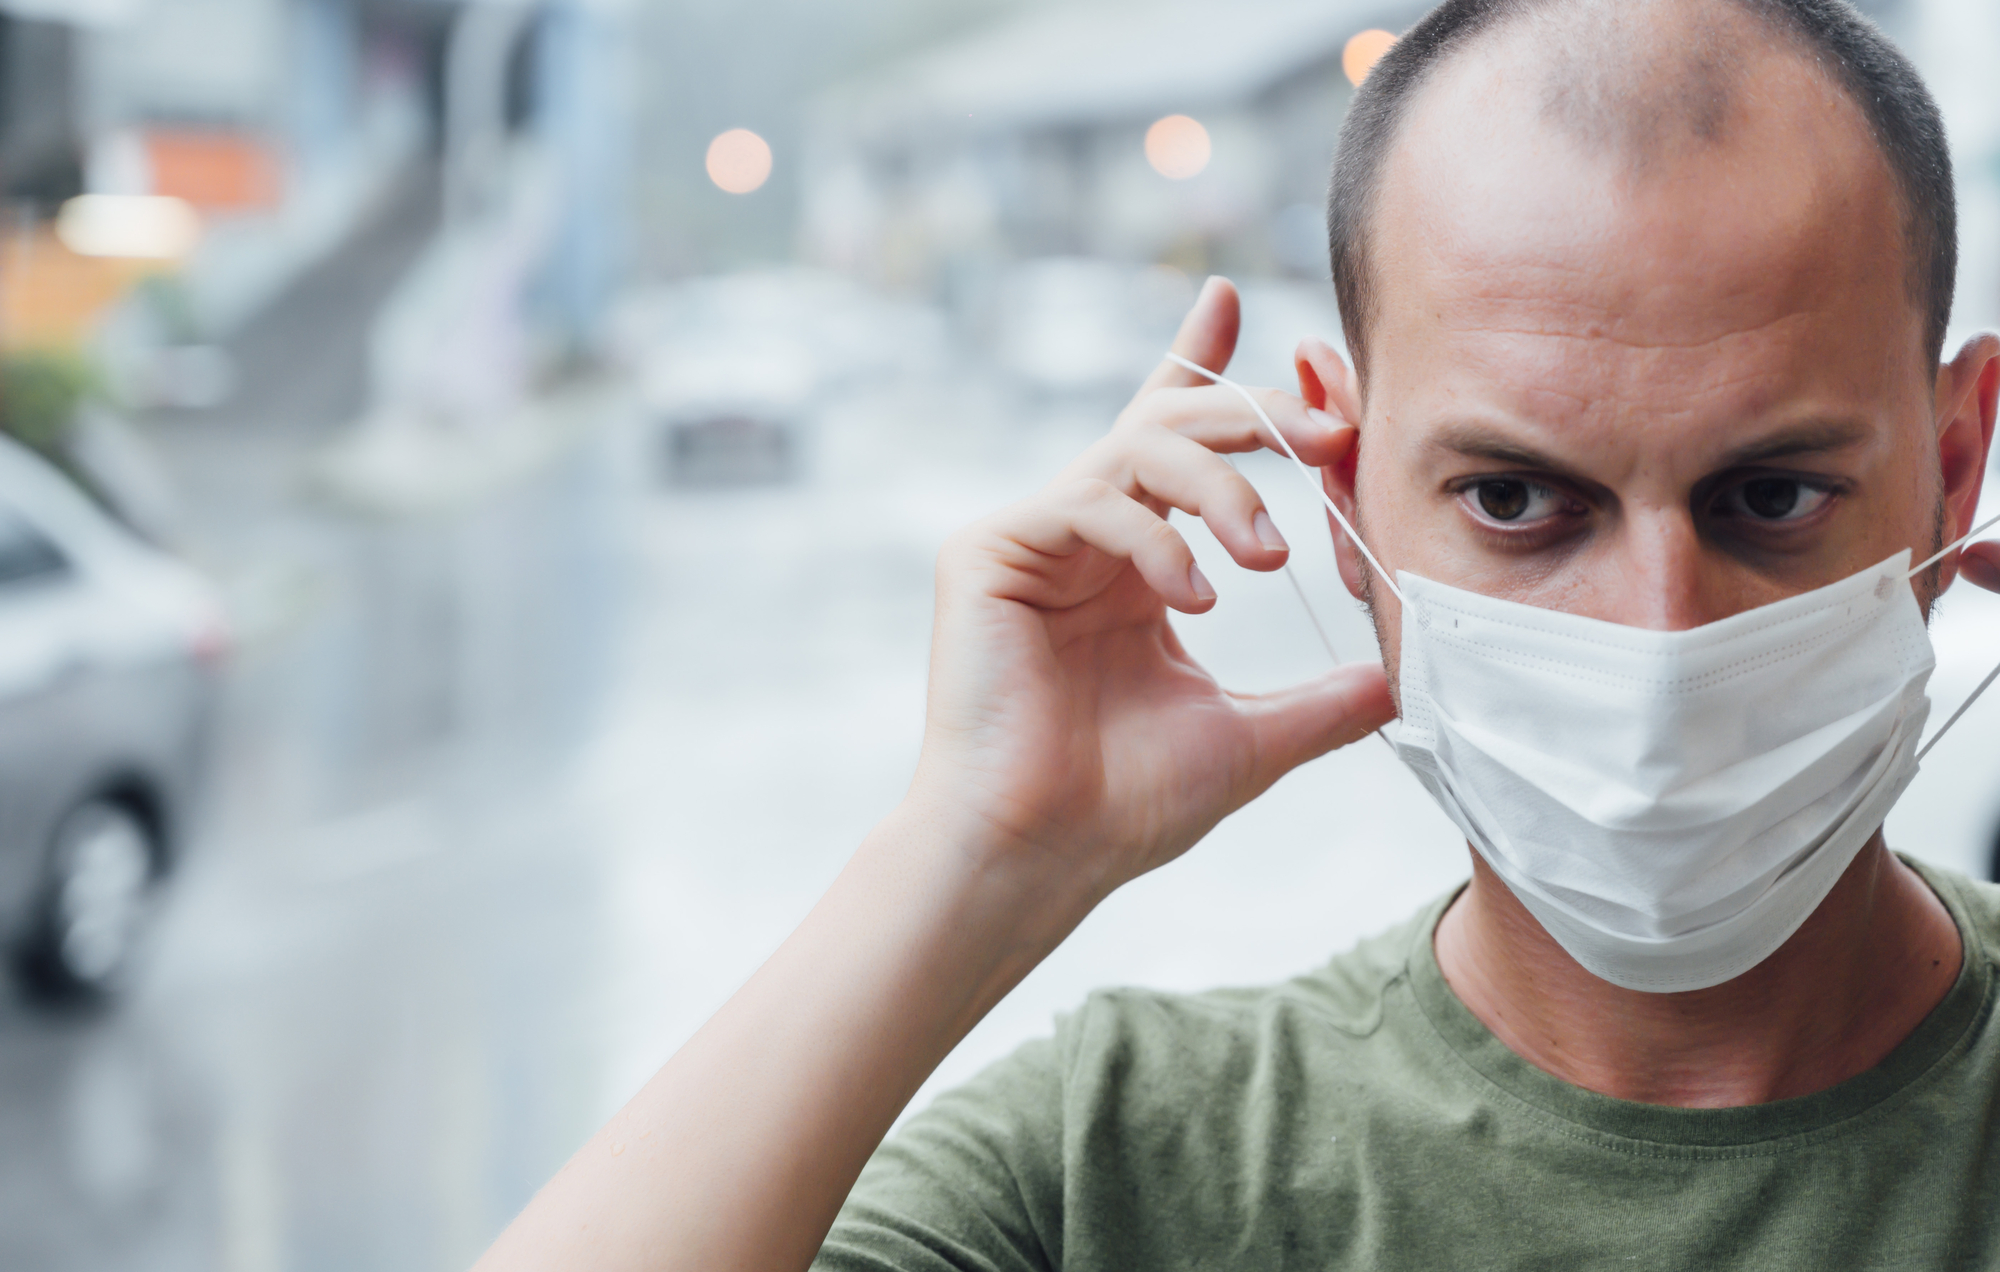 ovek sa maskom na licu tokom pandemije korona virusa, foto: Depositphotos/ karrastock.gmail.com